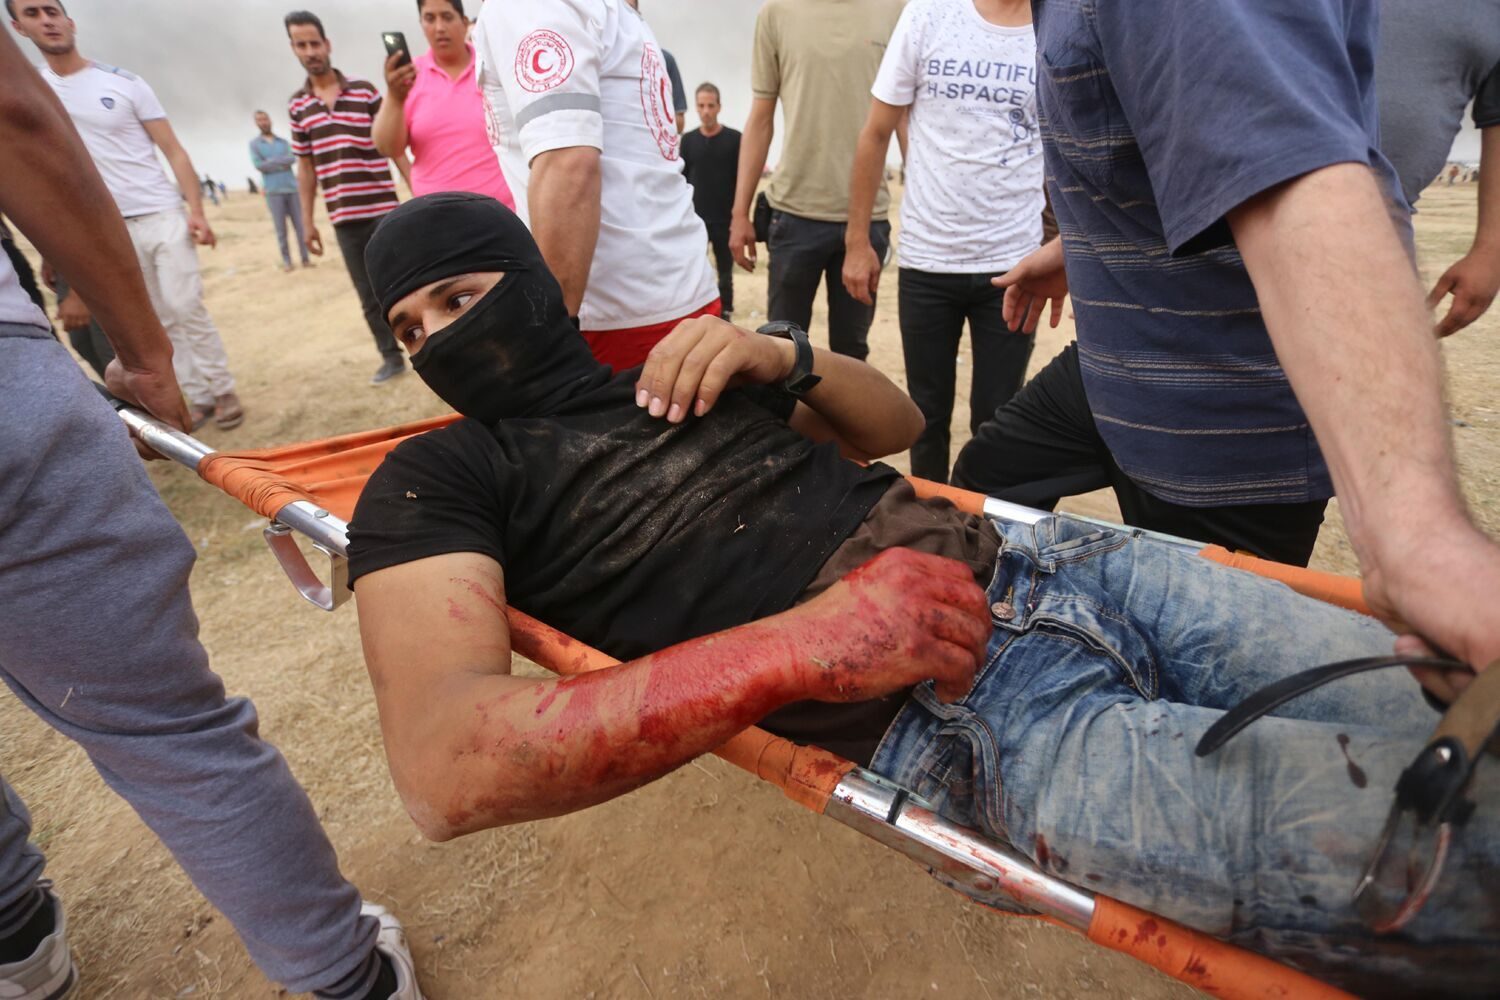 Injured protestor Gaza 2018